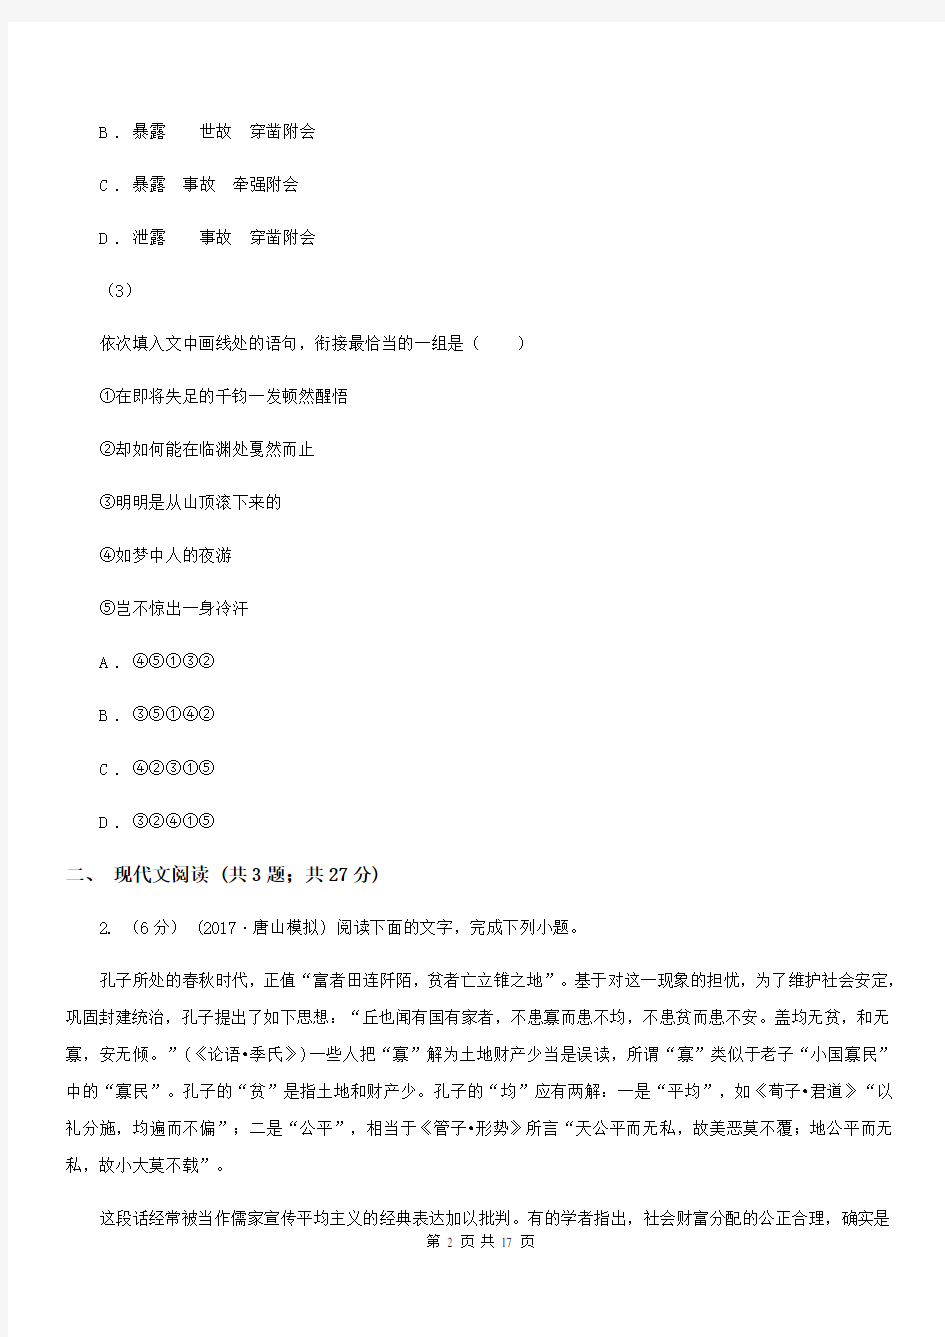 吉林省高考语文模拟考试试卷(二)(I)卷